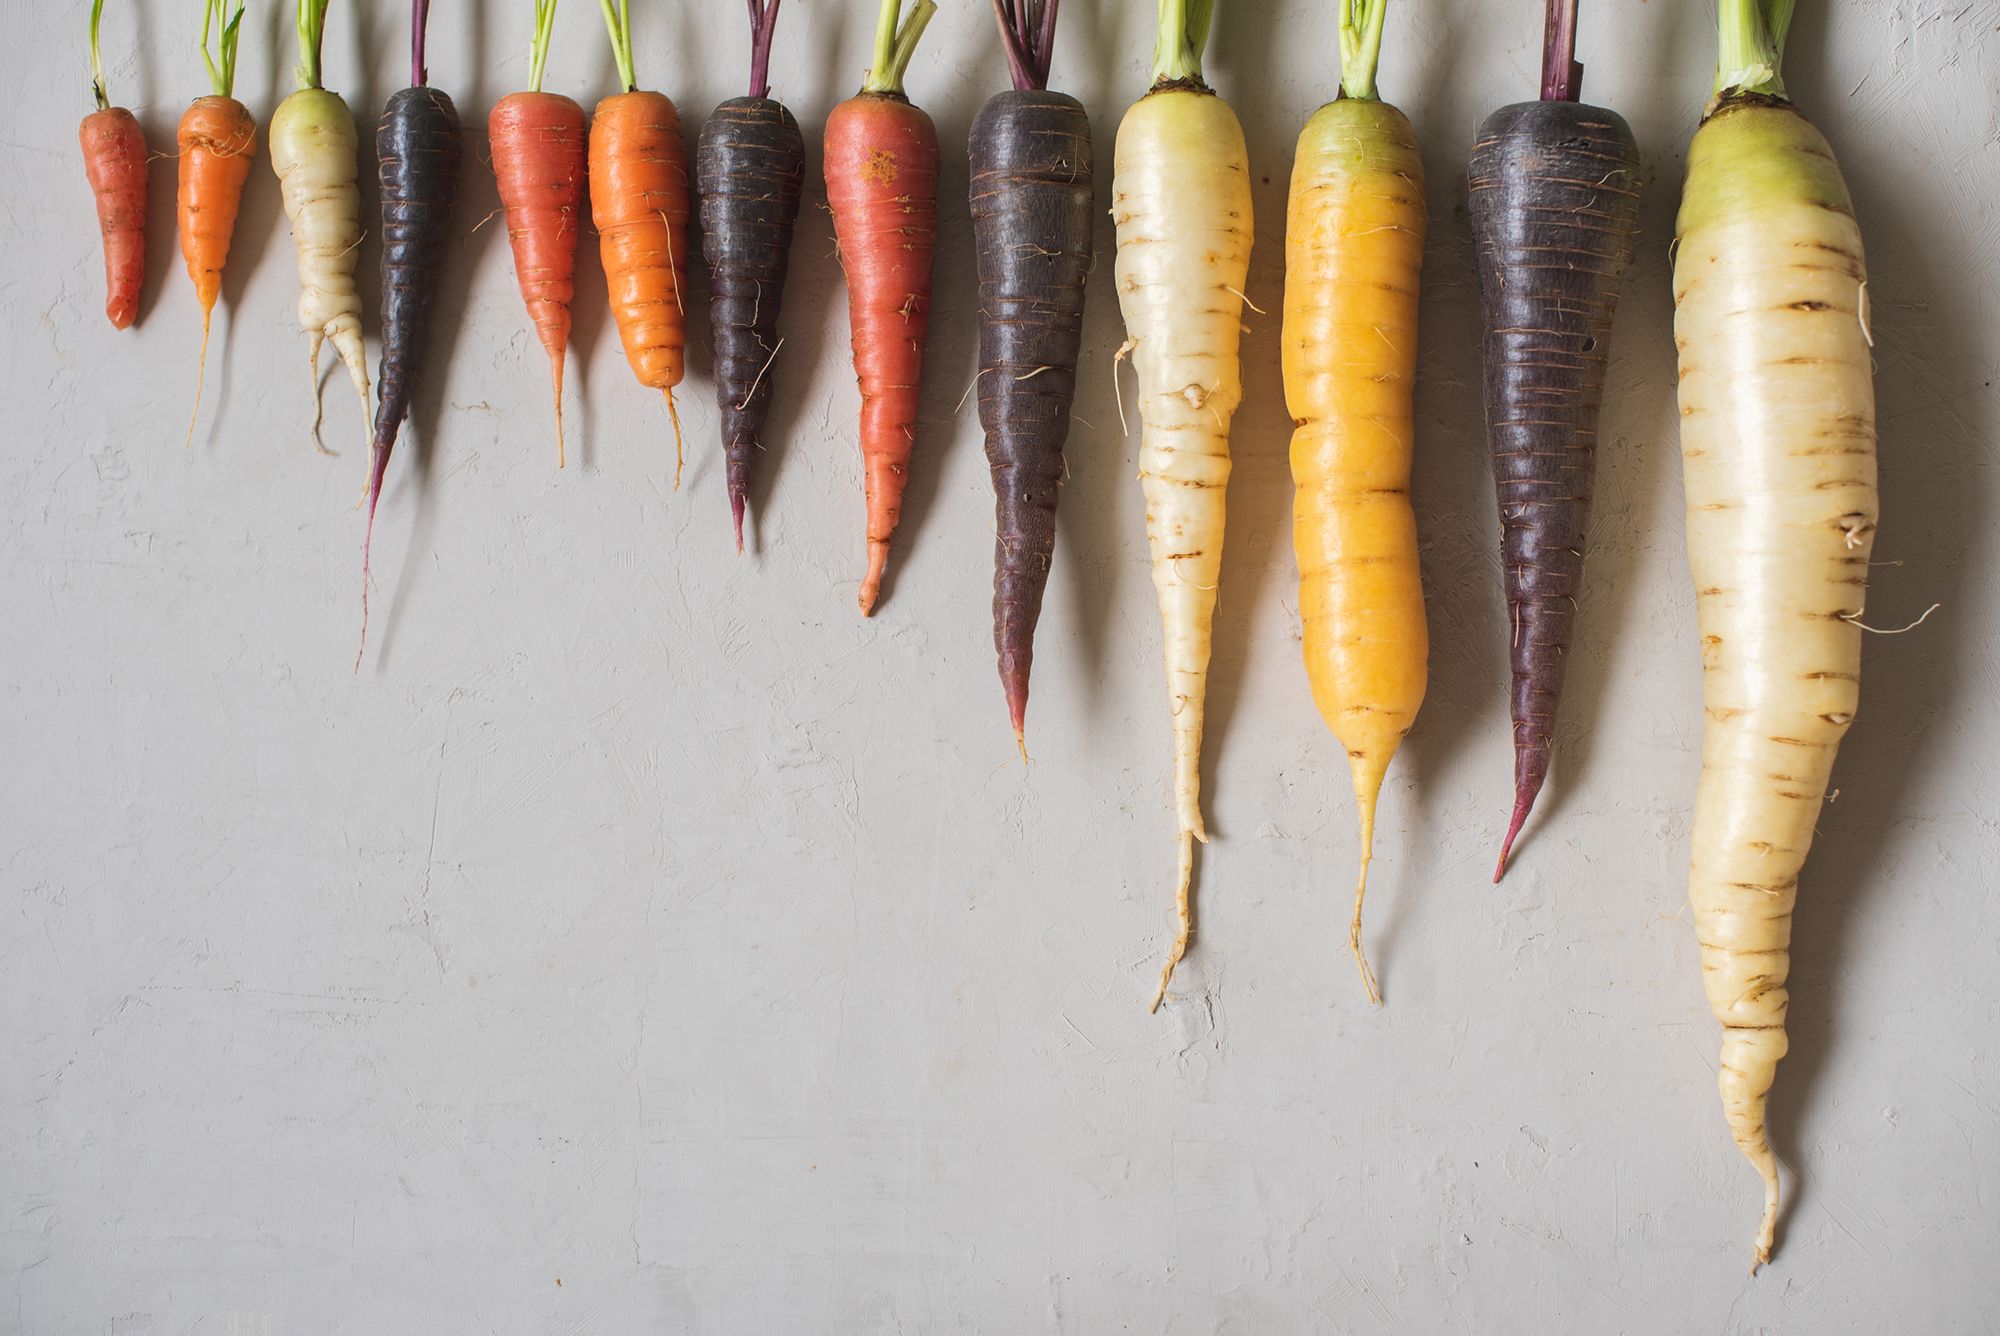 Verschiedenfarbige Karotten in unterschiedlichen Längen und Breiten